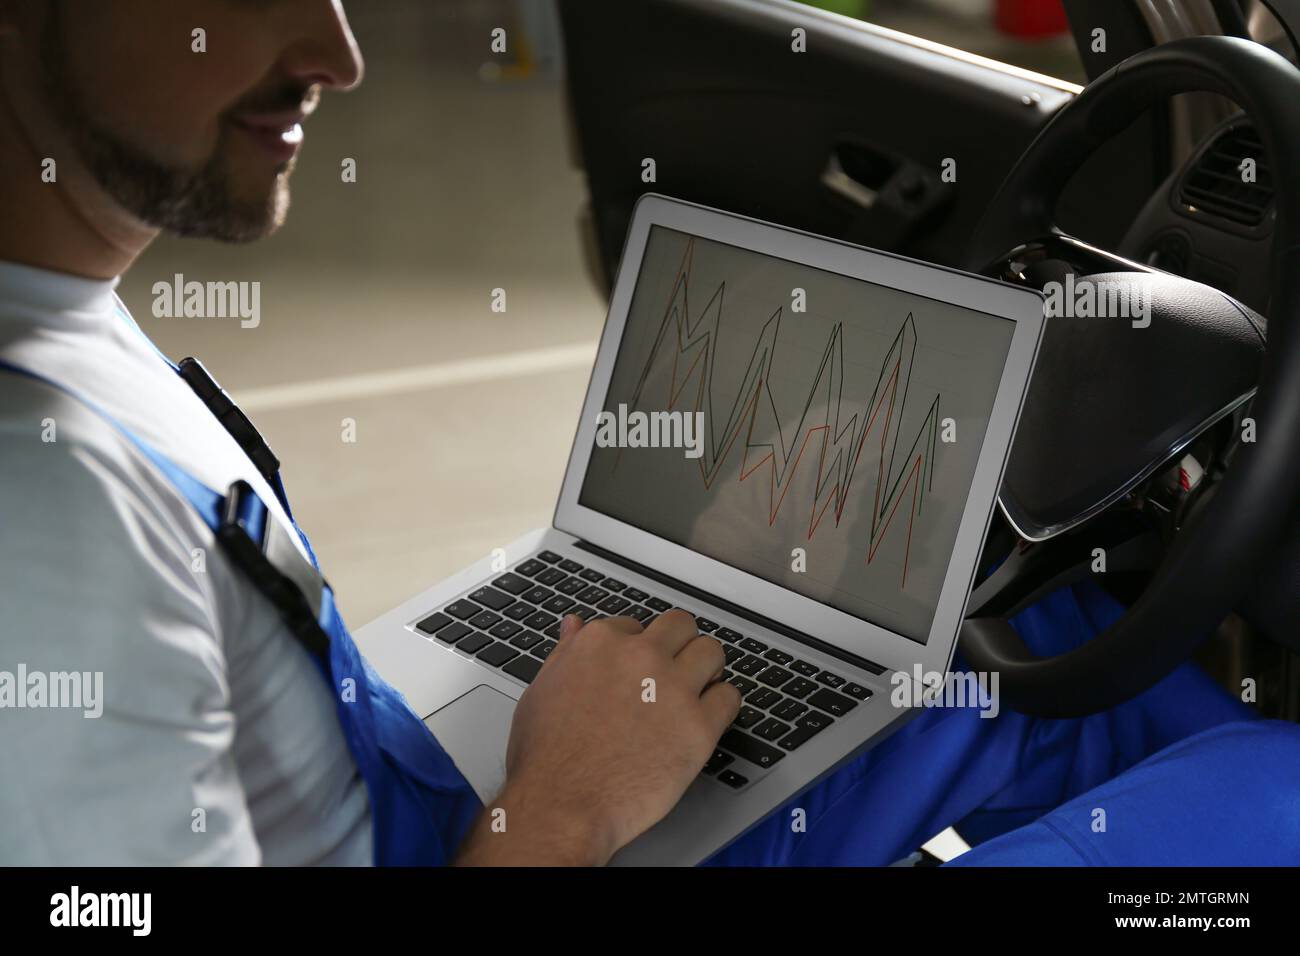 Mechaniker mit Laptop, der Autodiagnose in der Kfz-Werkstatt macht,  Nahaufnahme Stockfotografie - Alamy